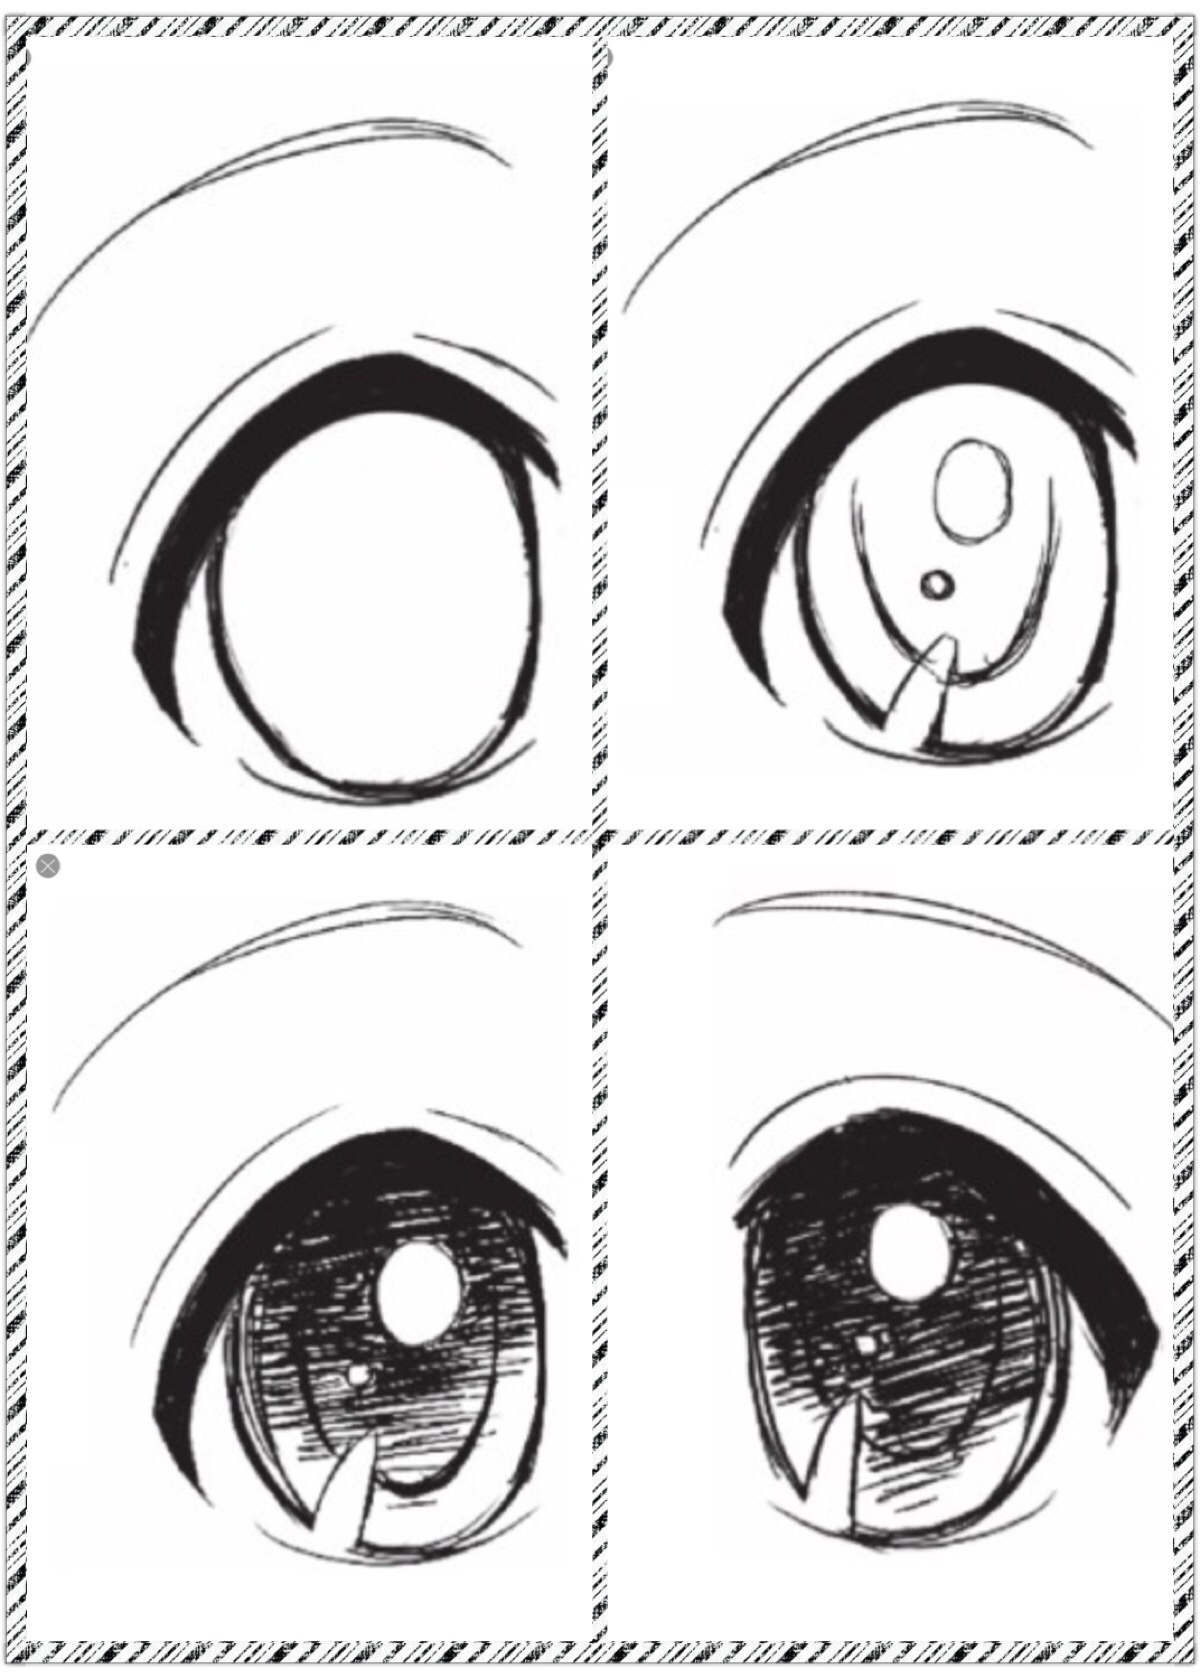 【眼睛画法教程】不同类型手绘动漫眼睛画法含眉毛睫毛教程（新手向竖屏合集）_哔哩哔哩 (゜-゜)つロ 干杯~-bilibili